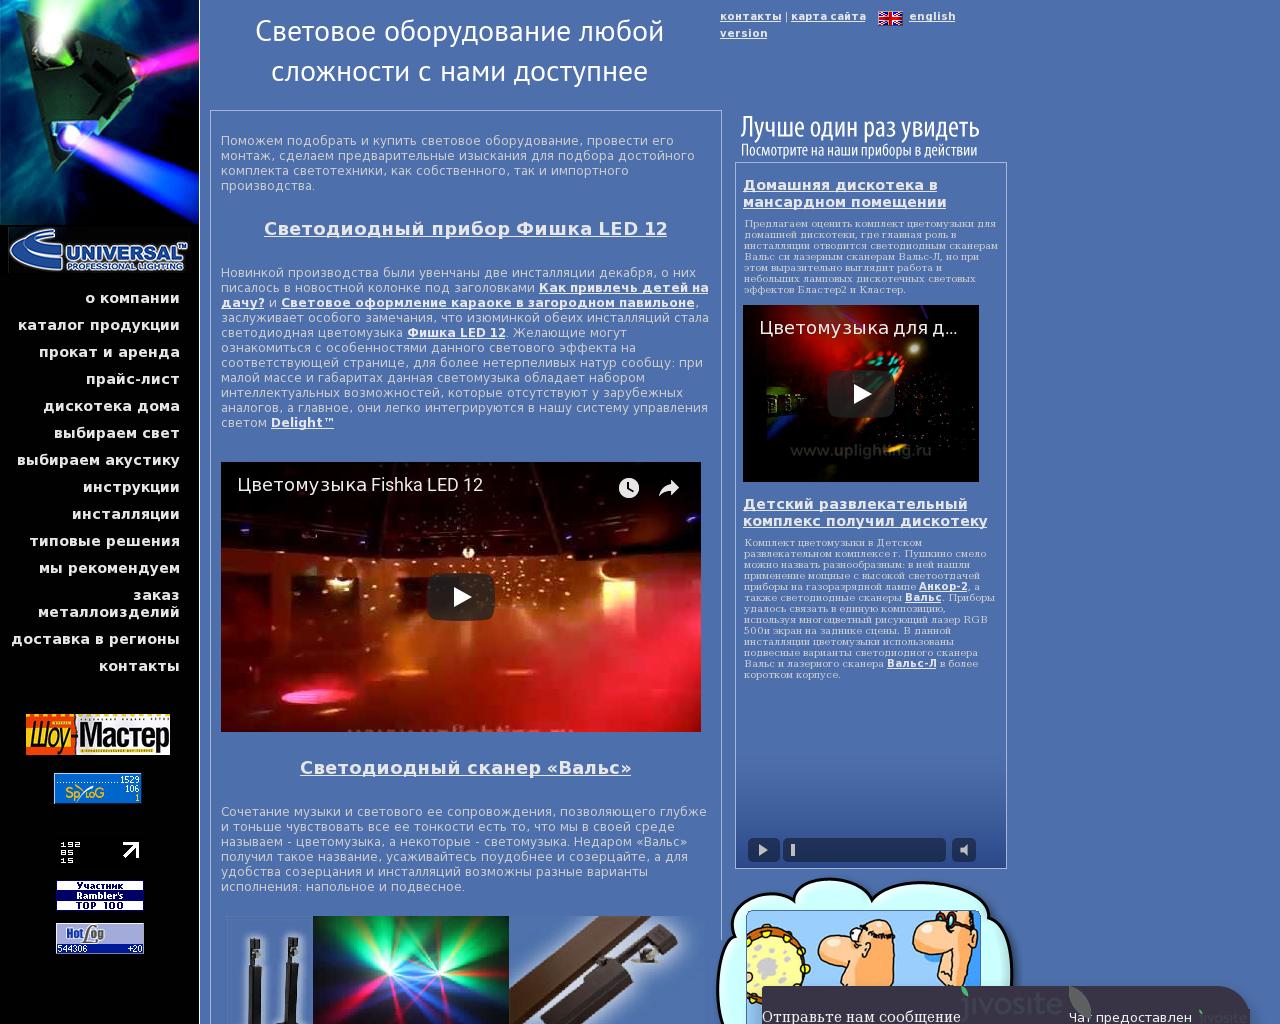 Изображение сайта uplighting.ru в разрешении 1280x1024